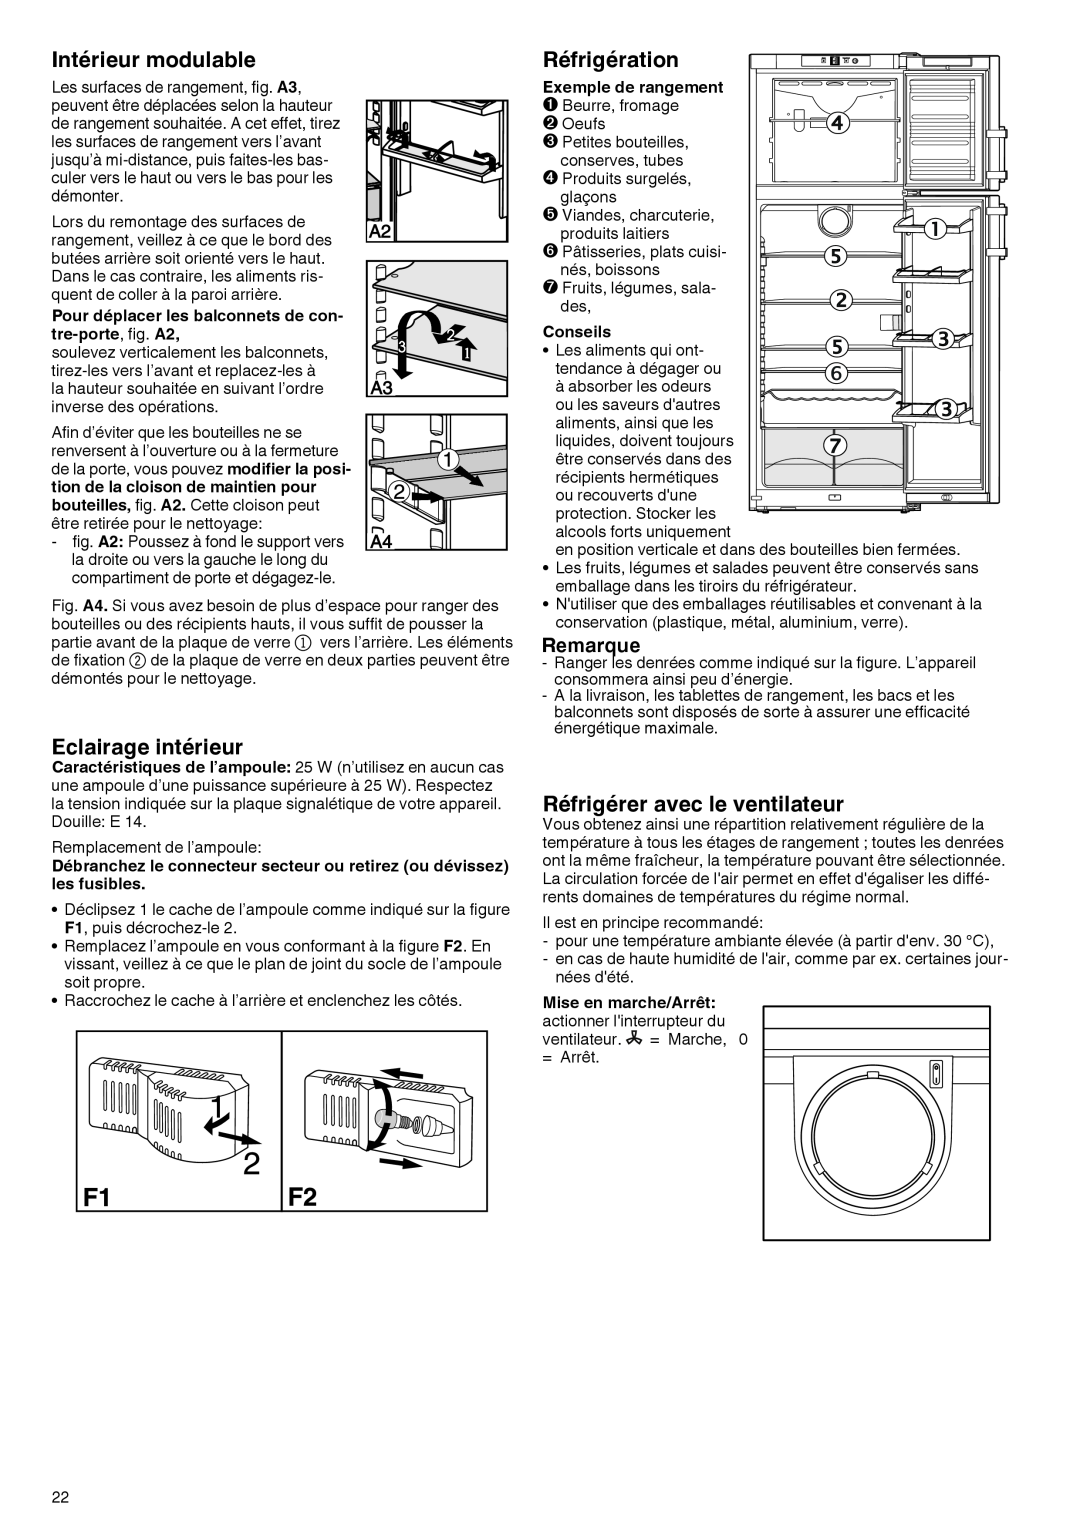 Liebherr 7081 885-01 Intérieur modulable, Eclairage intérieur, Réfrigération, Réfrigérer avec le ventilateur, Conseils 